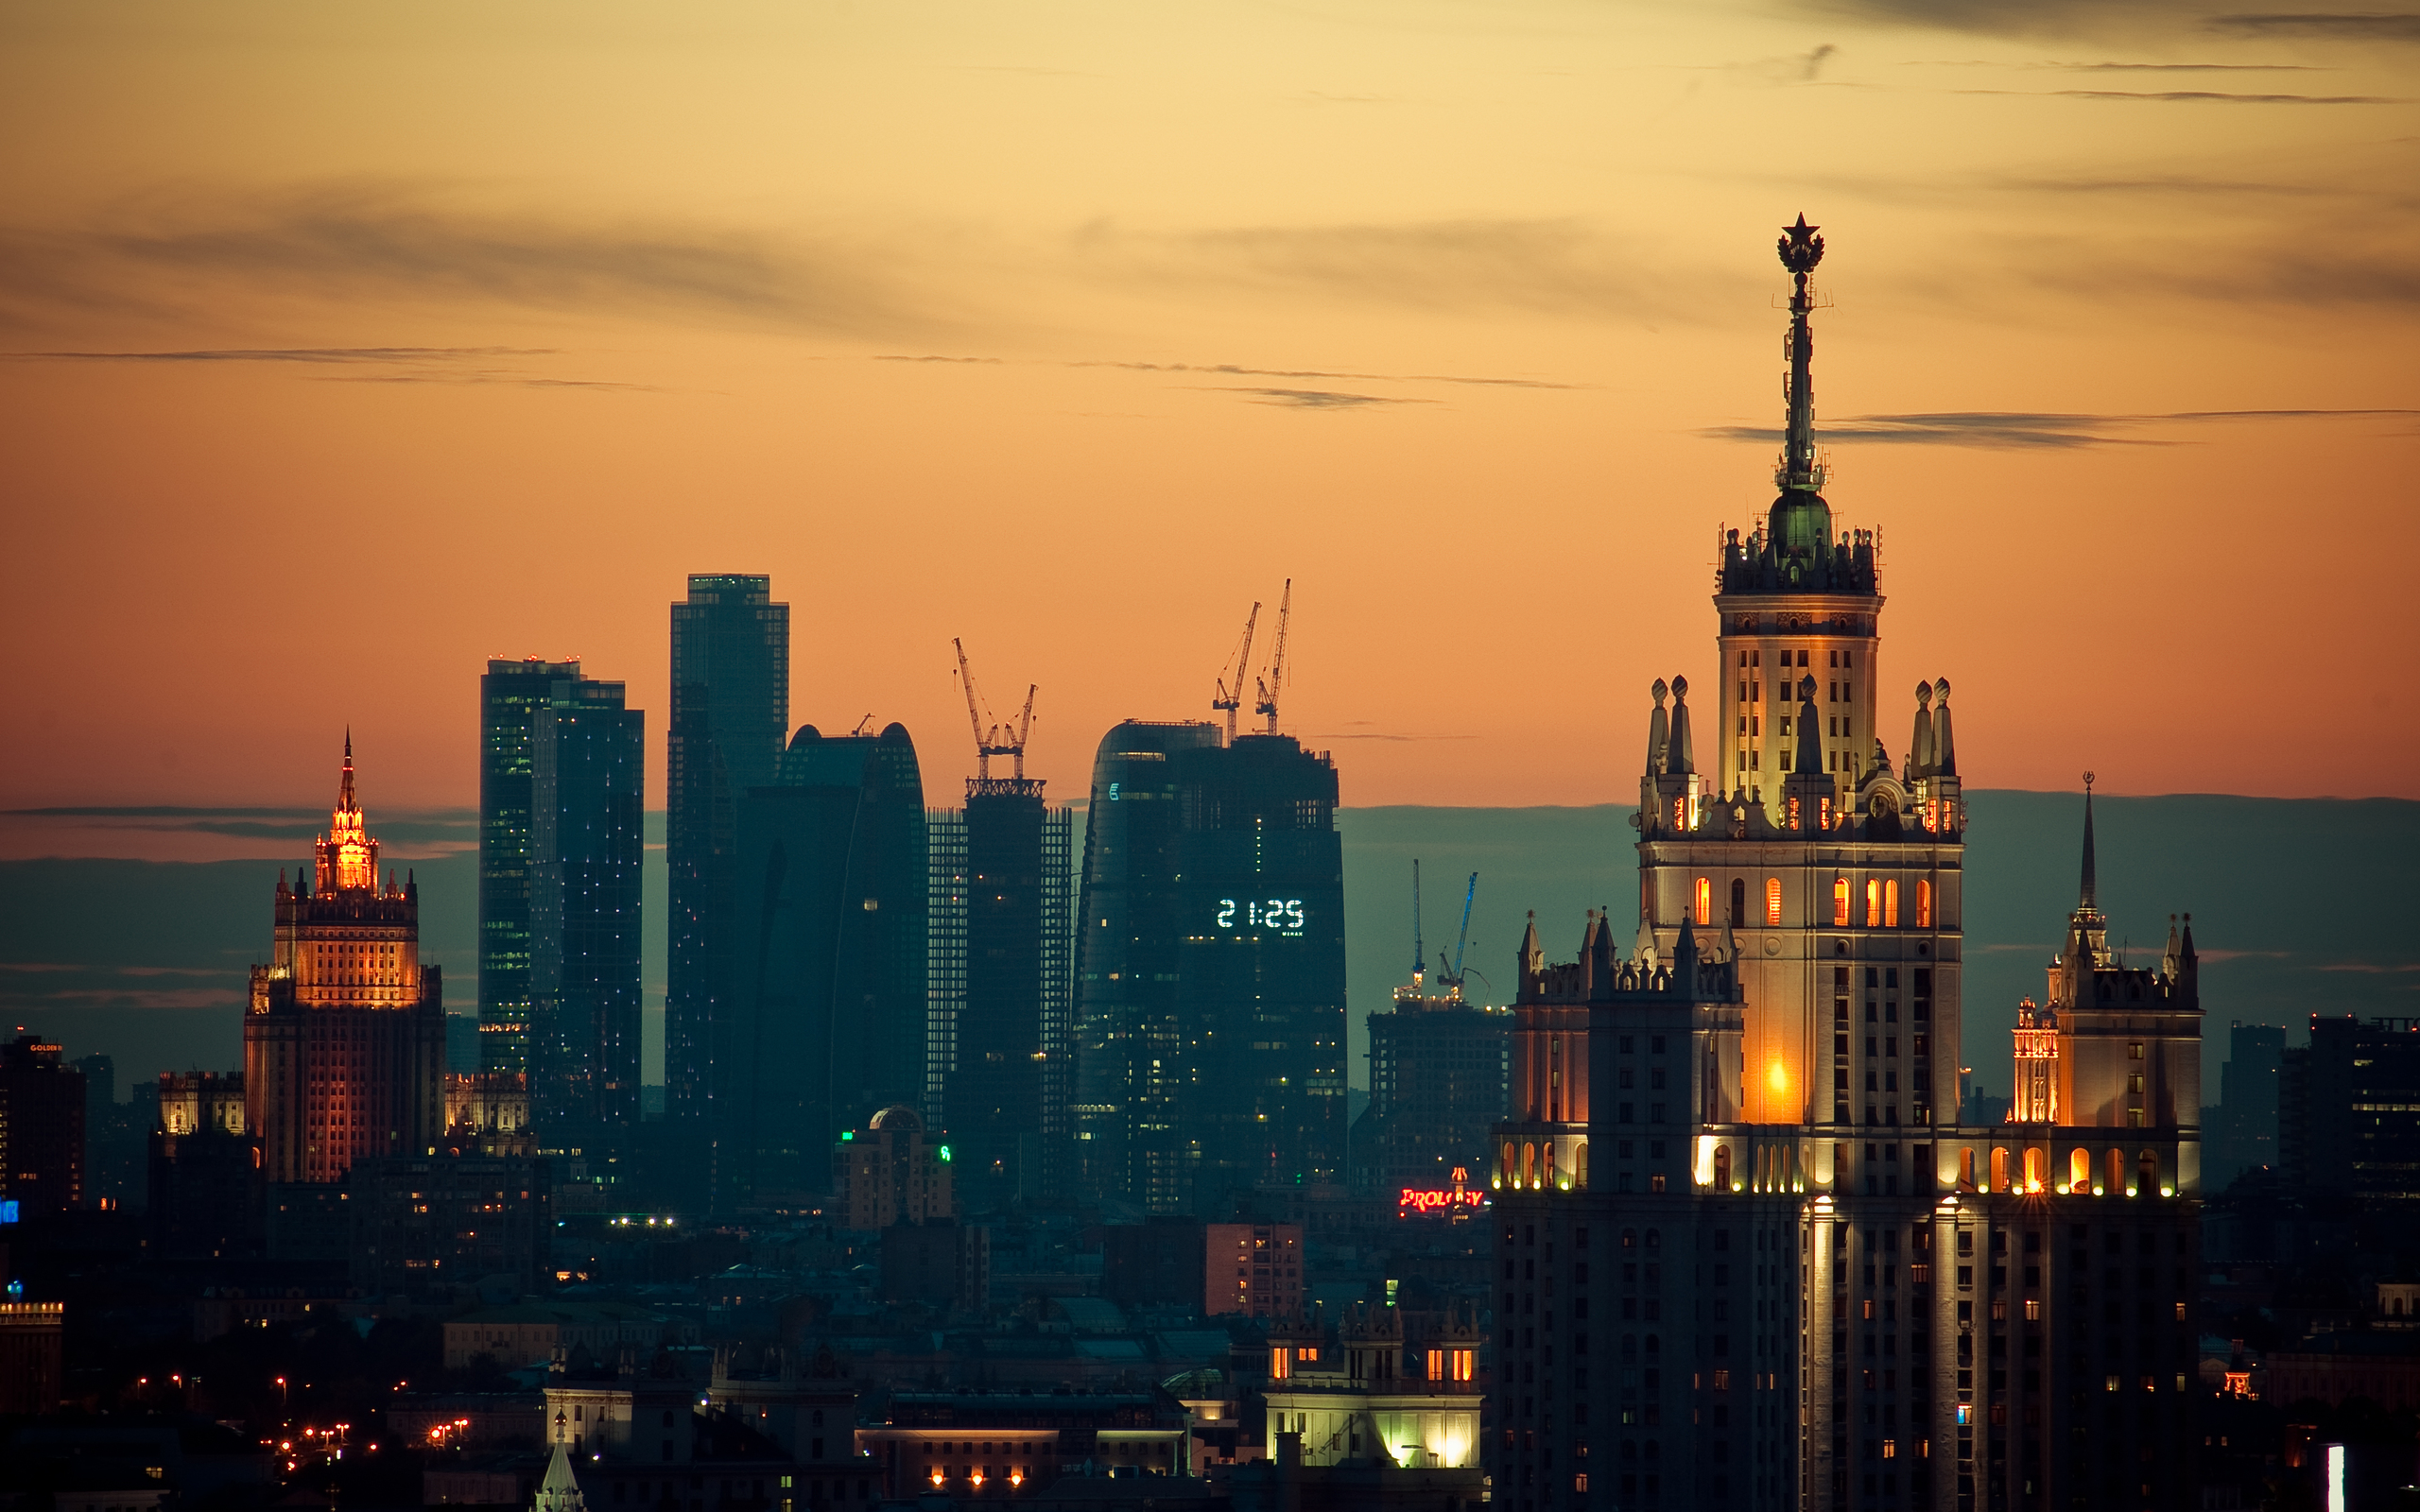 Moscow City и сталинская высотка на закате